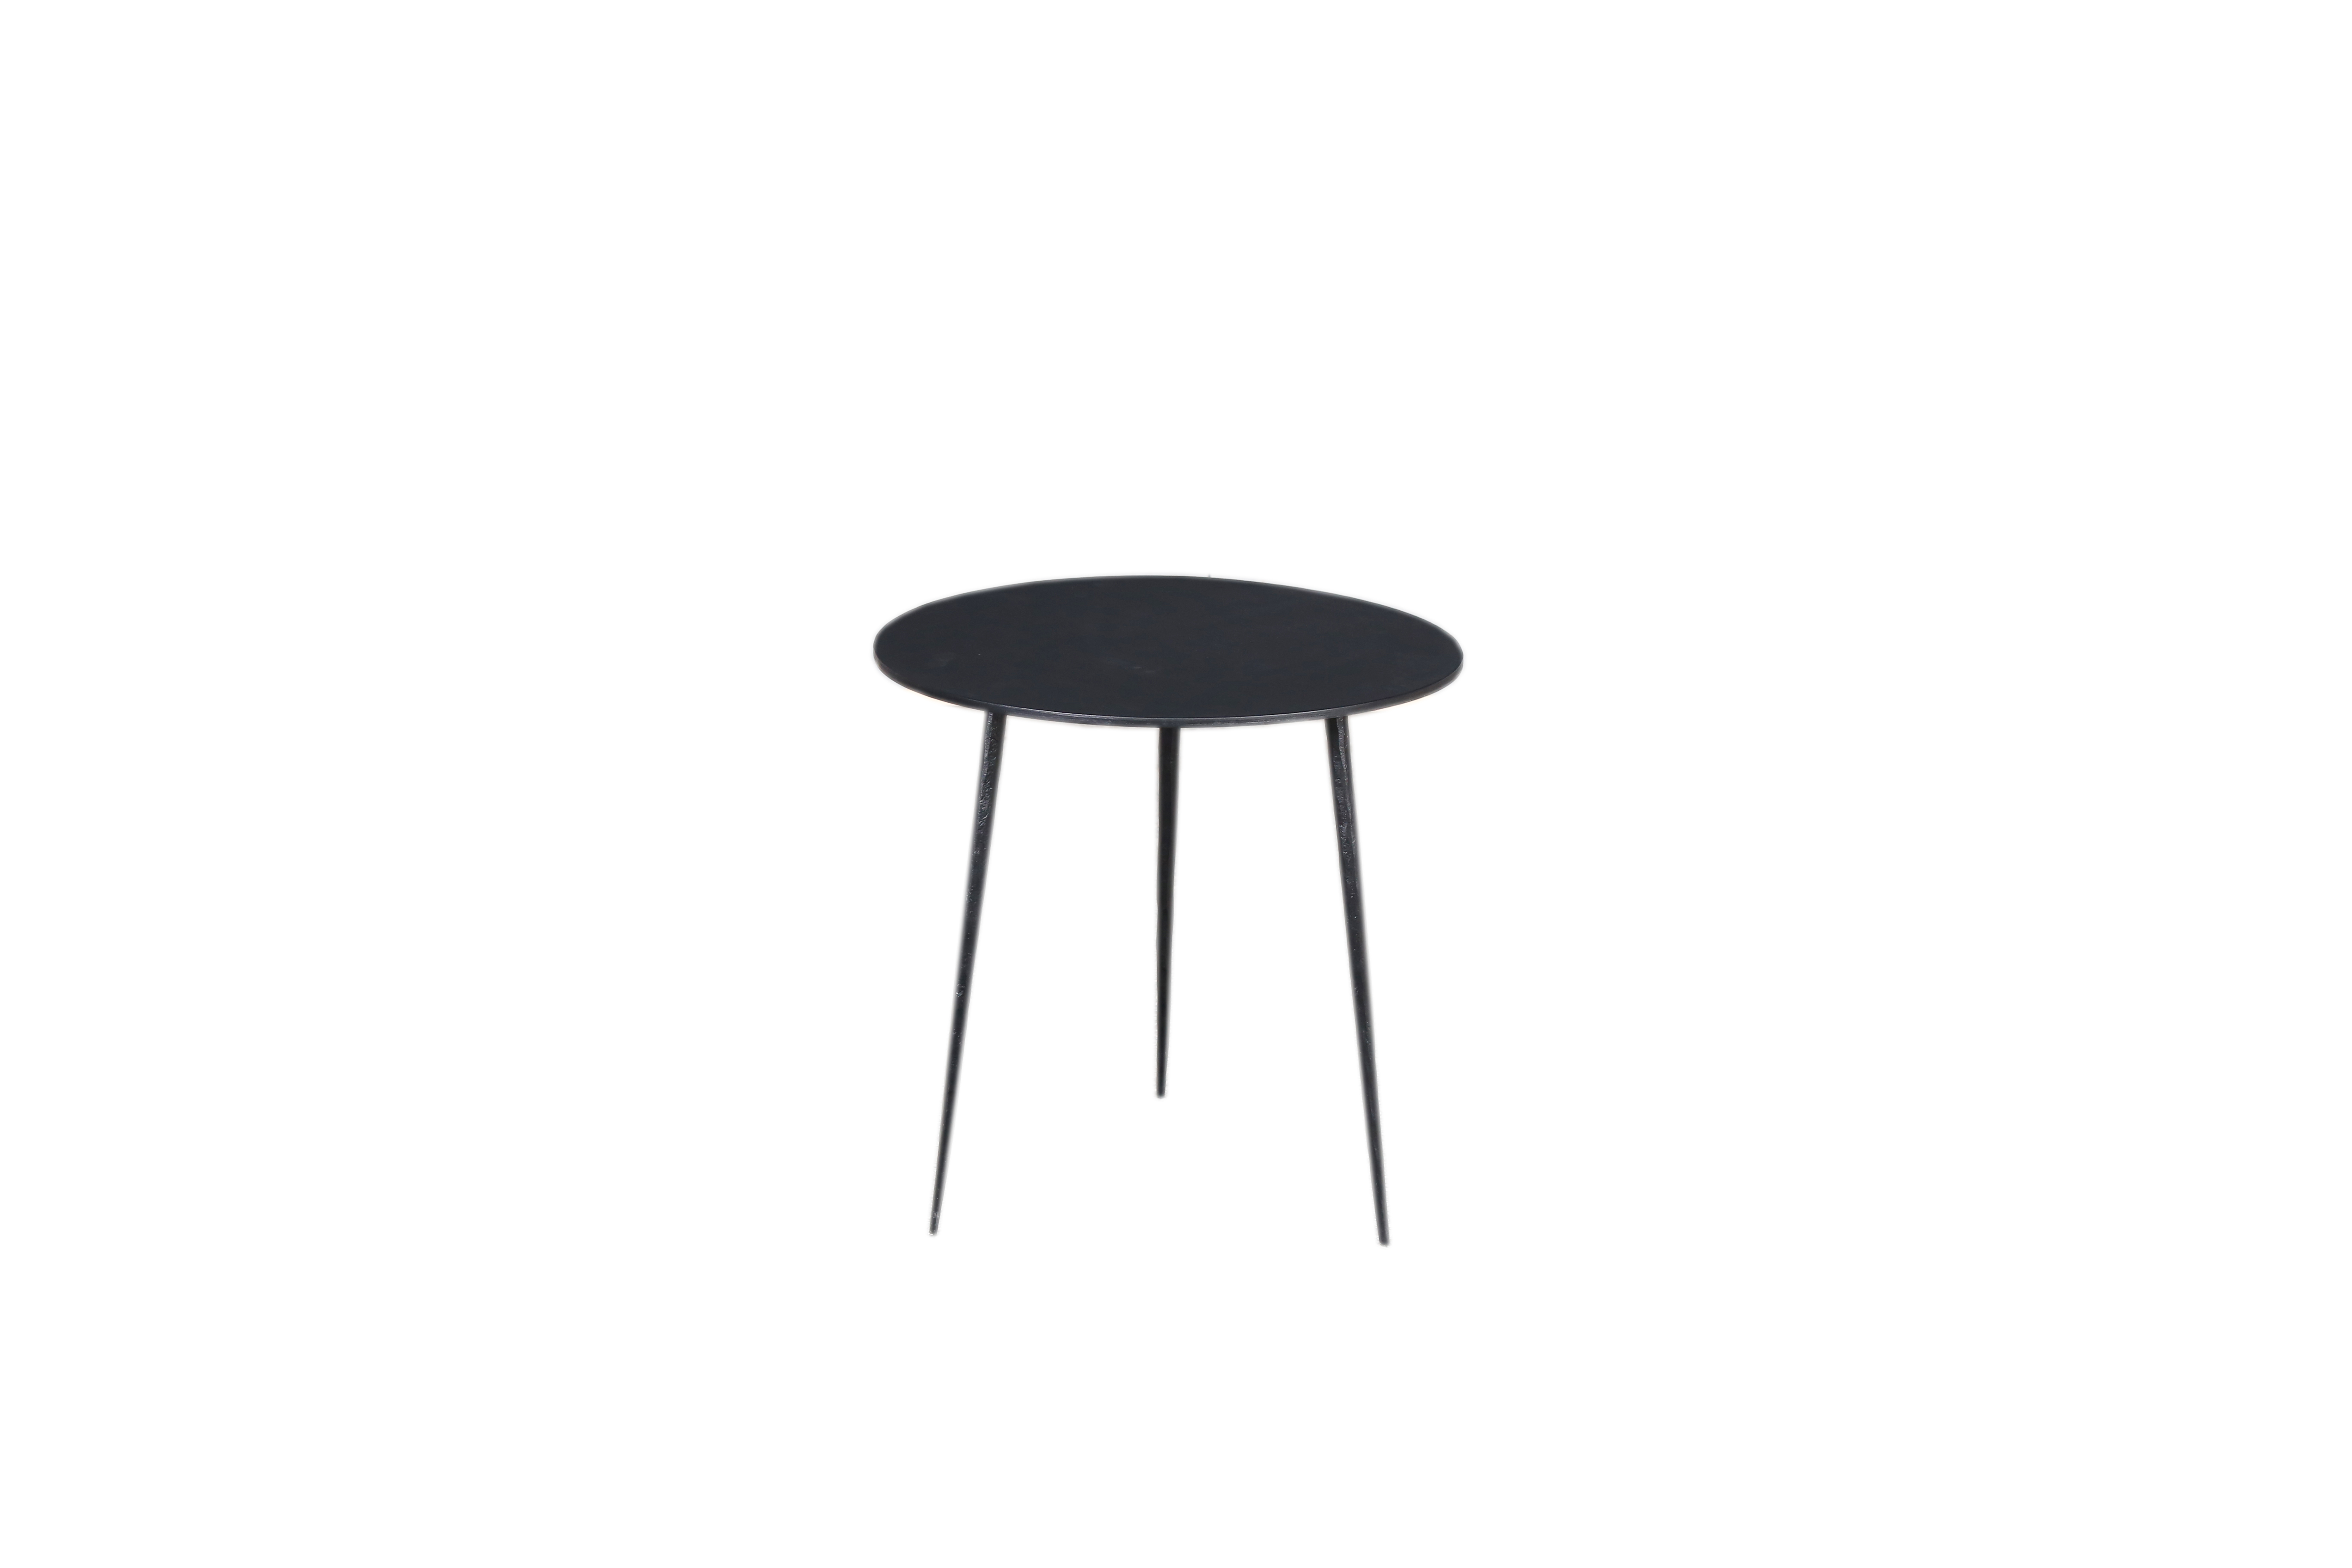 MS417-01 Black - Wrought iron Round Tea Table